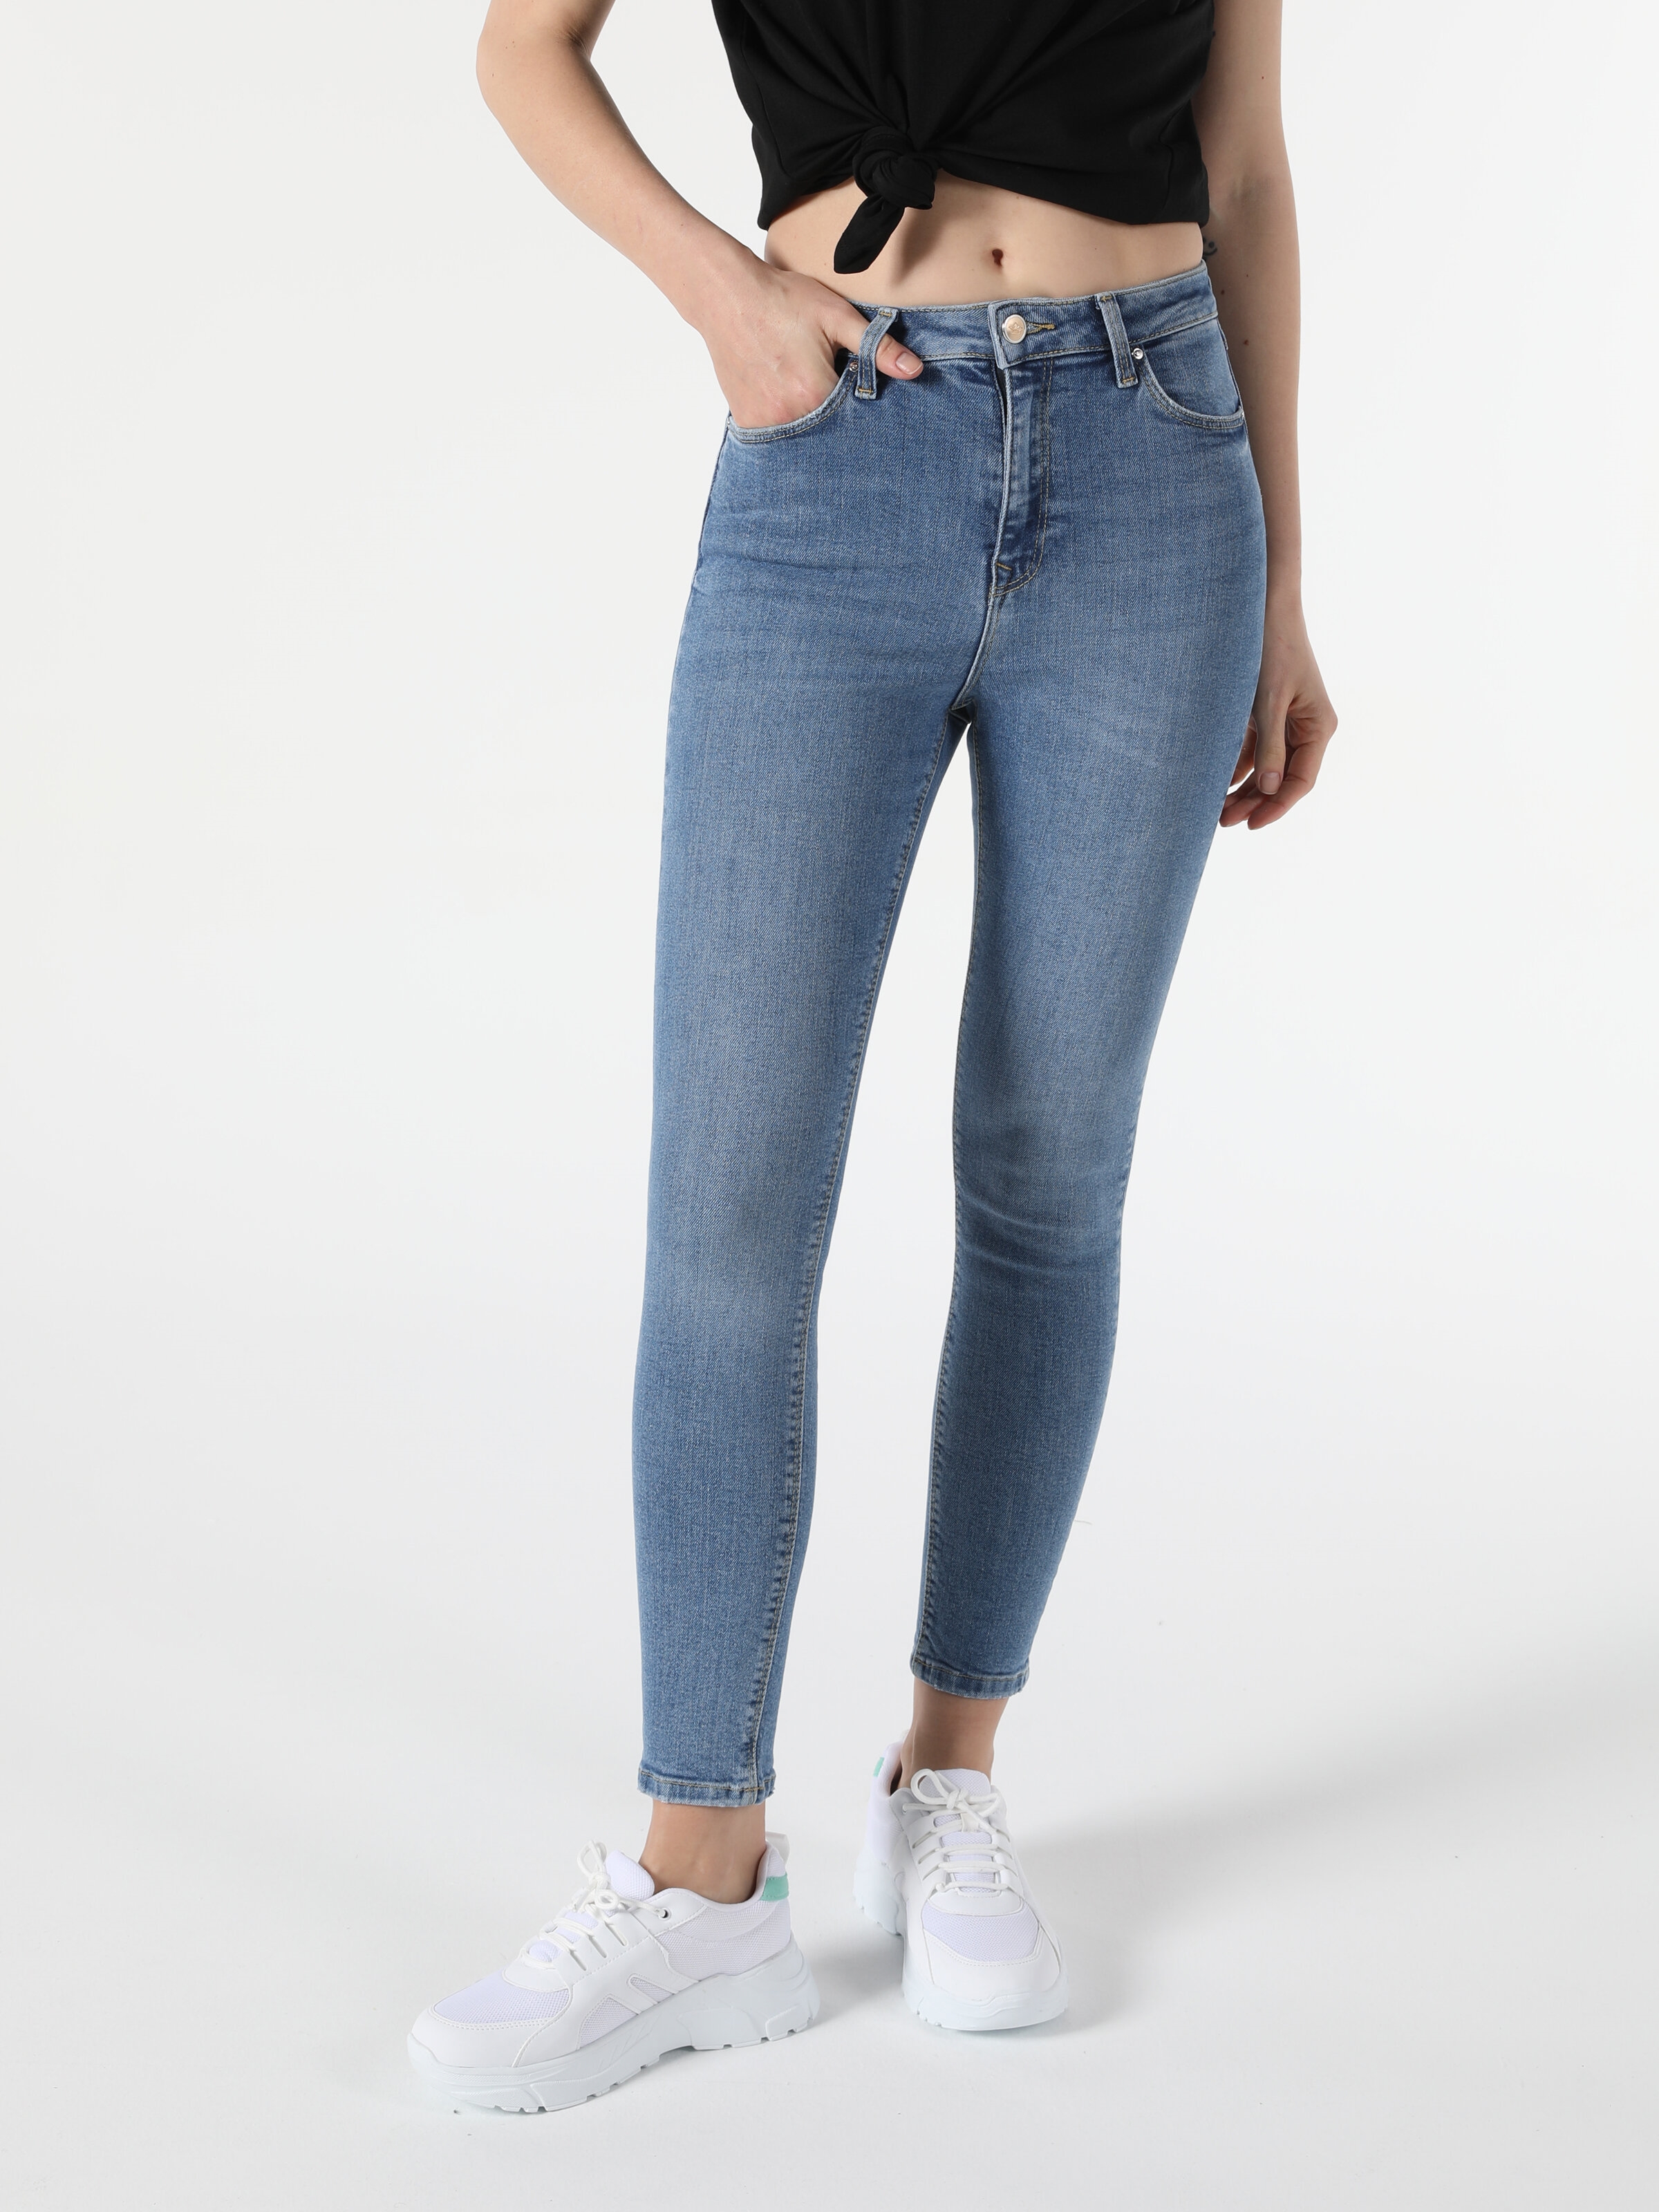 Colins 760 Dıana Yüksek Bel Dar Paça Super Slim Fit Kadın Jean Pantolon. 3